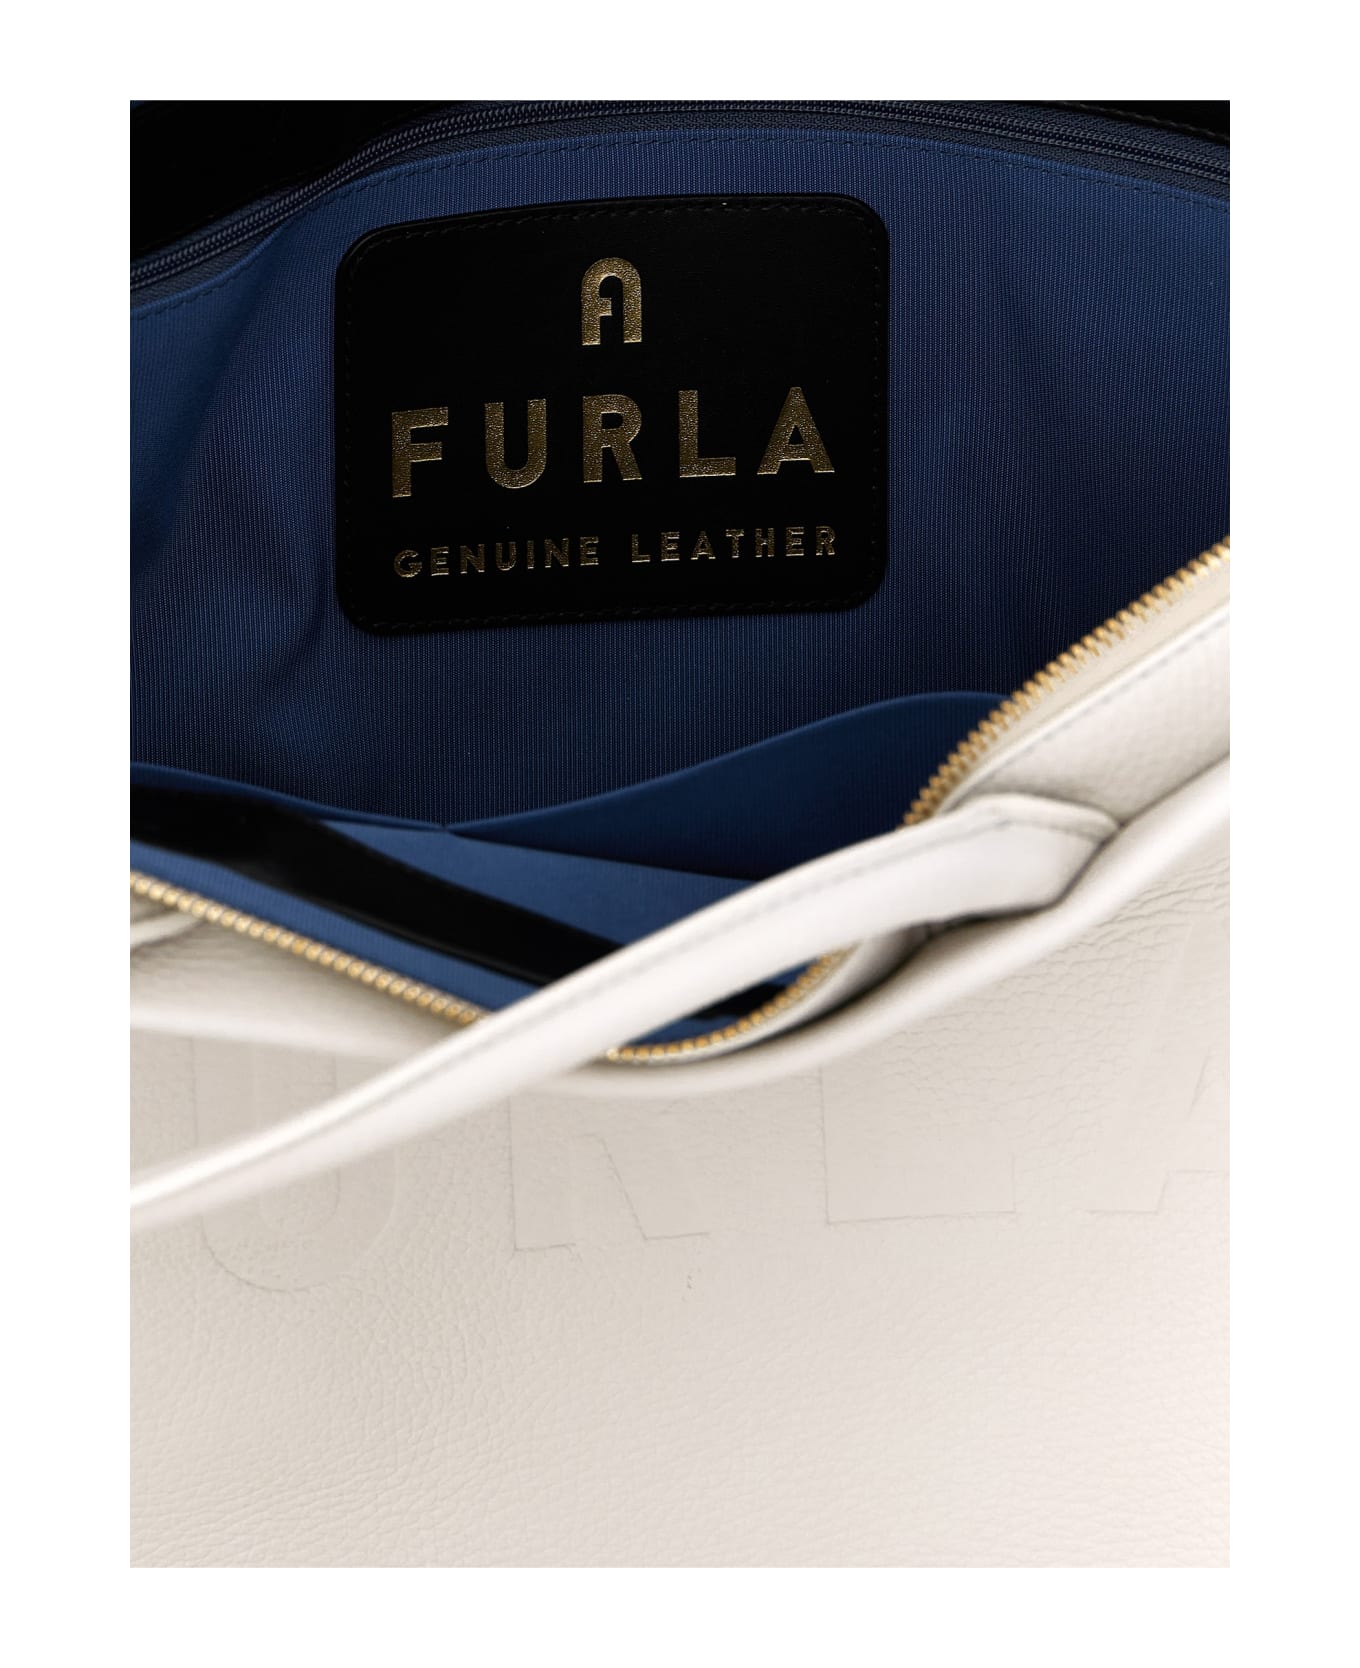 Furla 'opportunity L' Shopping Bag - White/Black トートバッグ